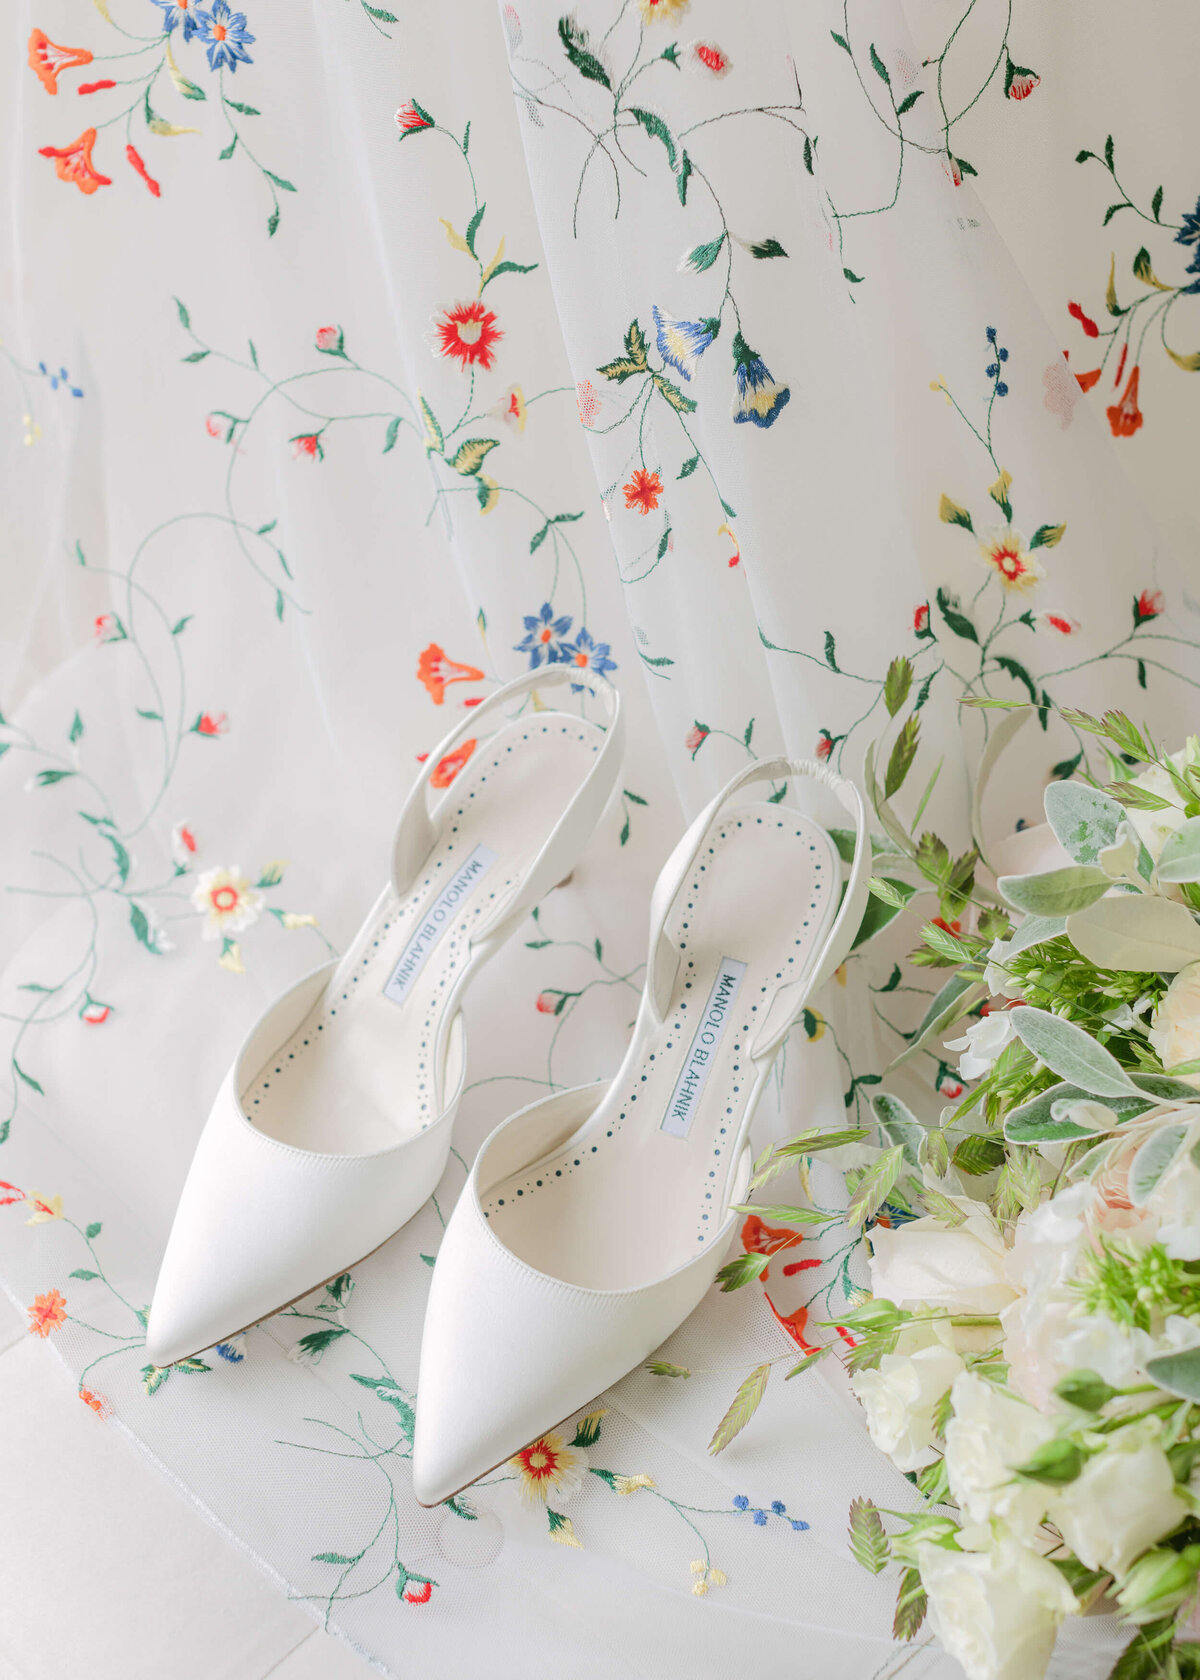 chloe-winstanley-weddings-manolo-blahnik-bridal-shoes